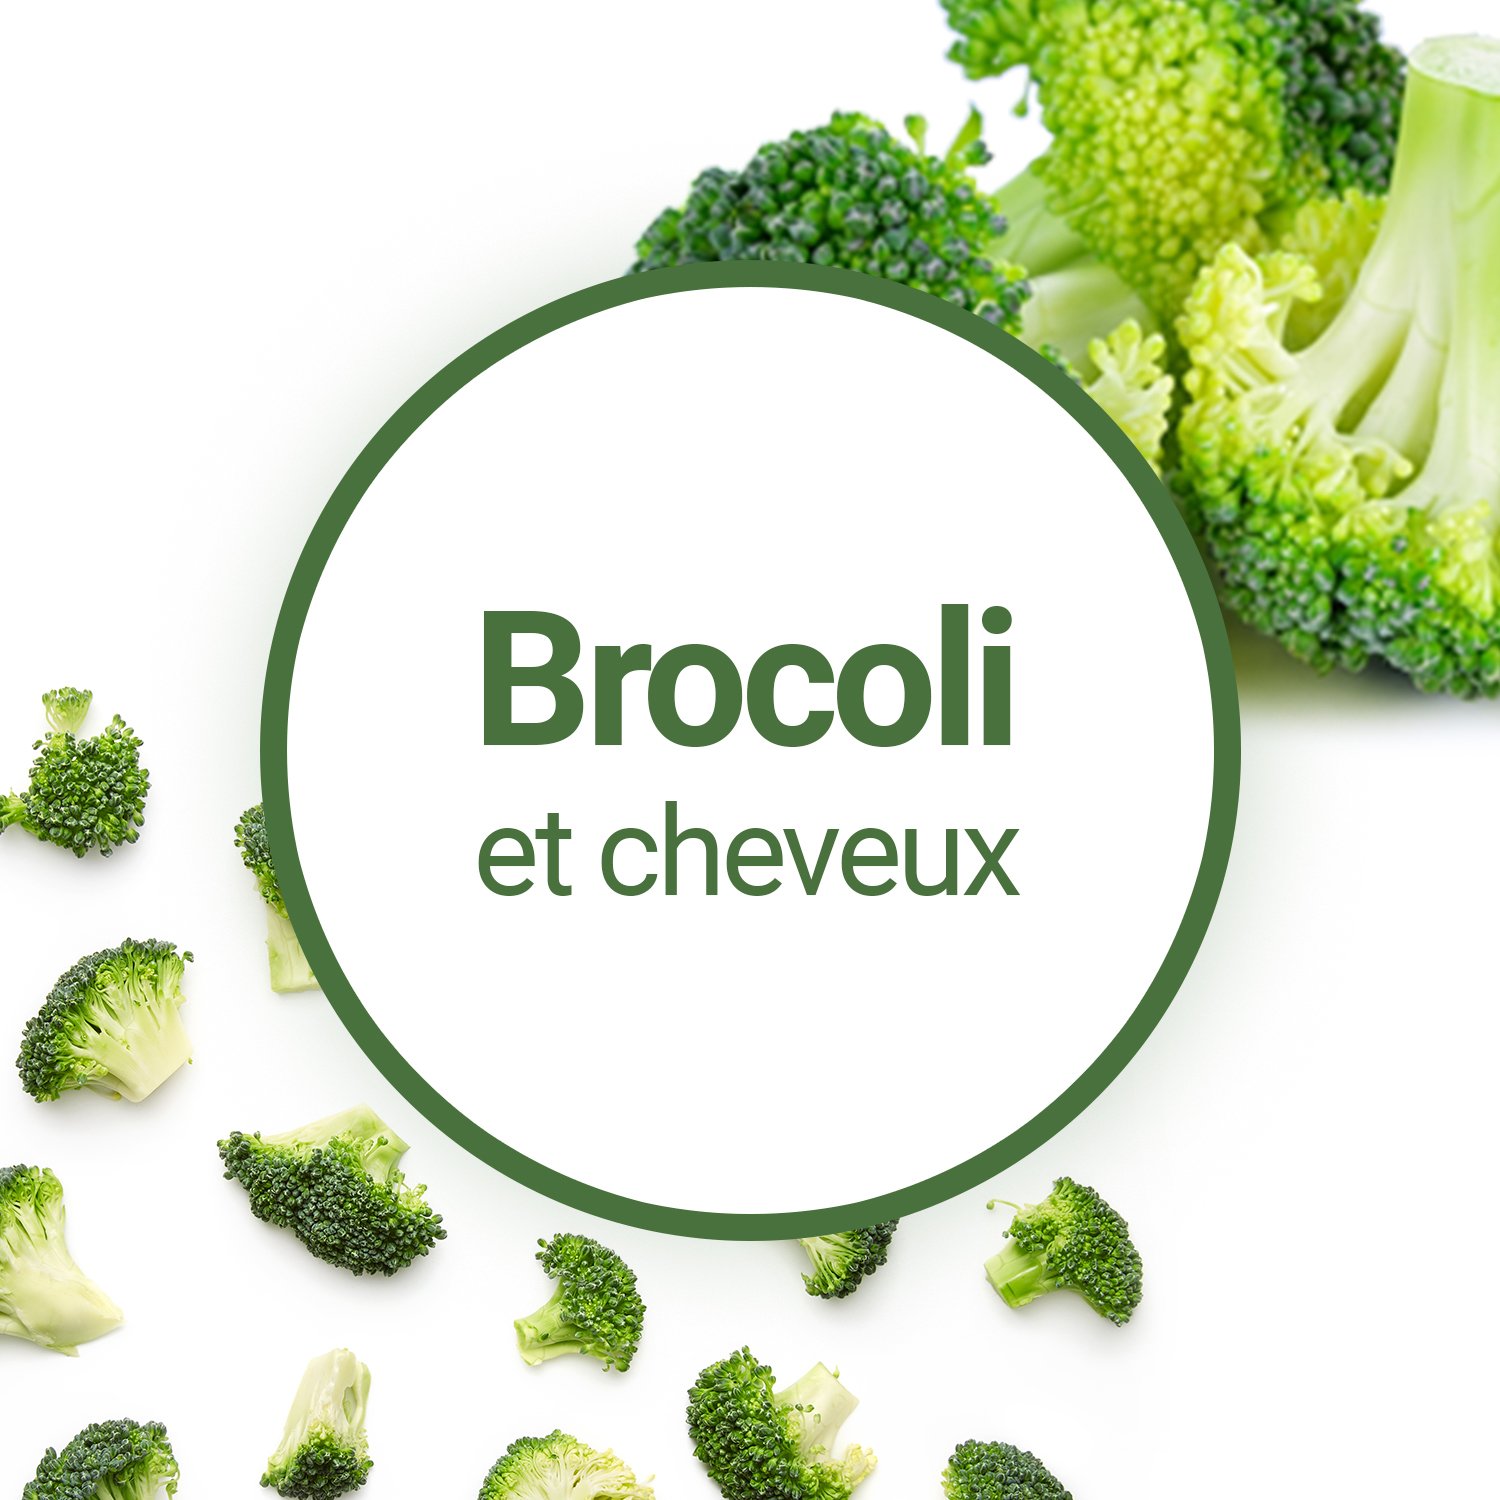 Comment utiliser l'huile végétale de Brocoli sur les cheveux ?